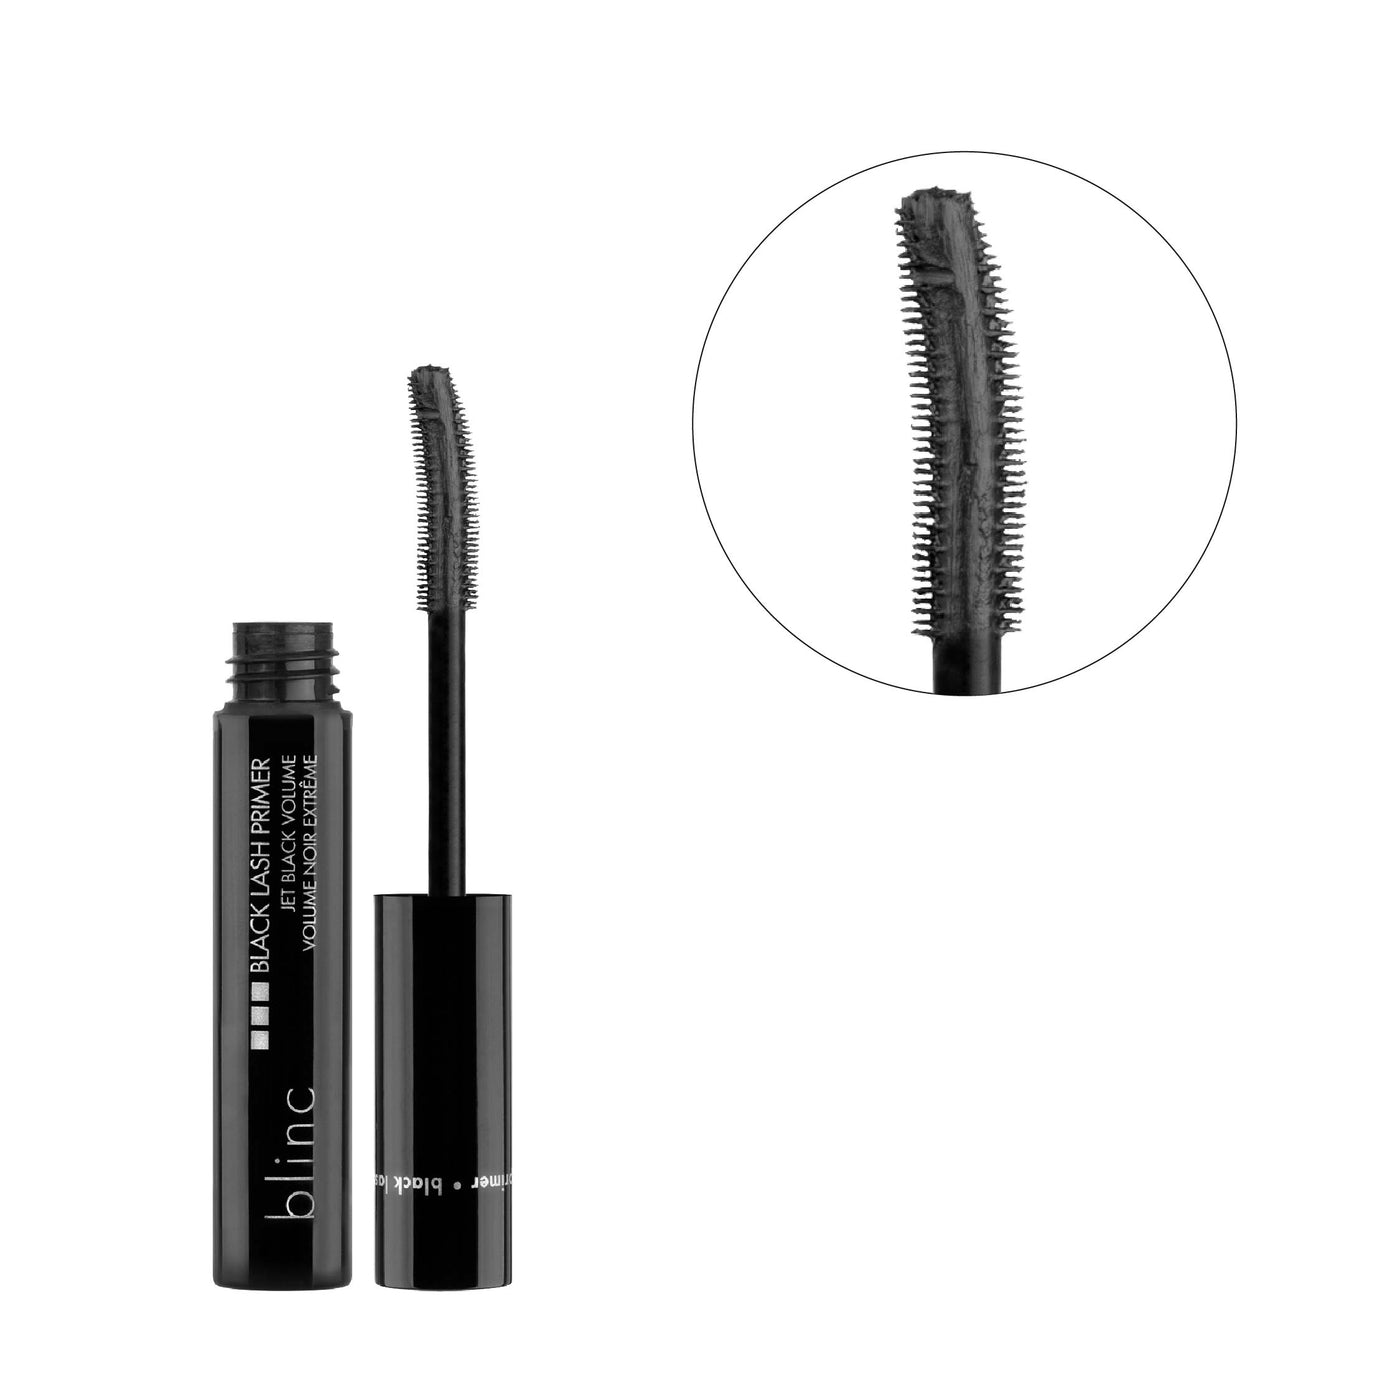 blinc Black Lash Primer  Pre-Mascara Eyelash Primer For Full, Nourished  Lashes – Farsedakis Beauty Brands